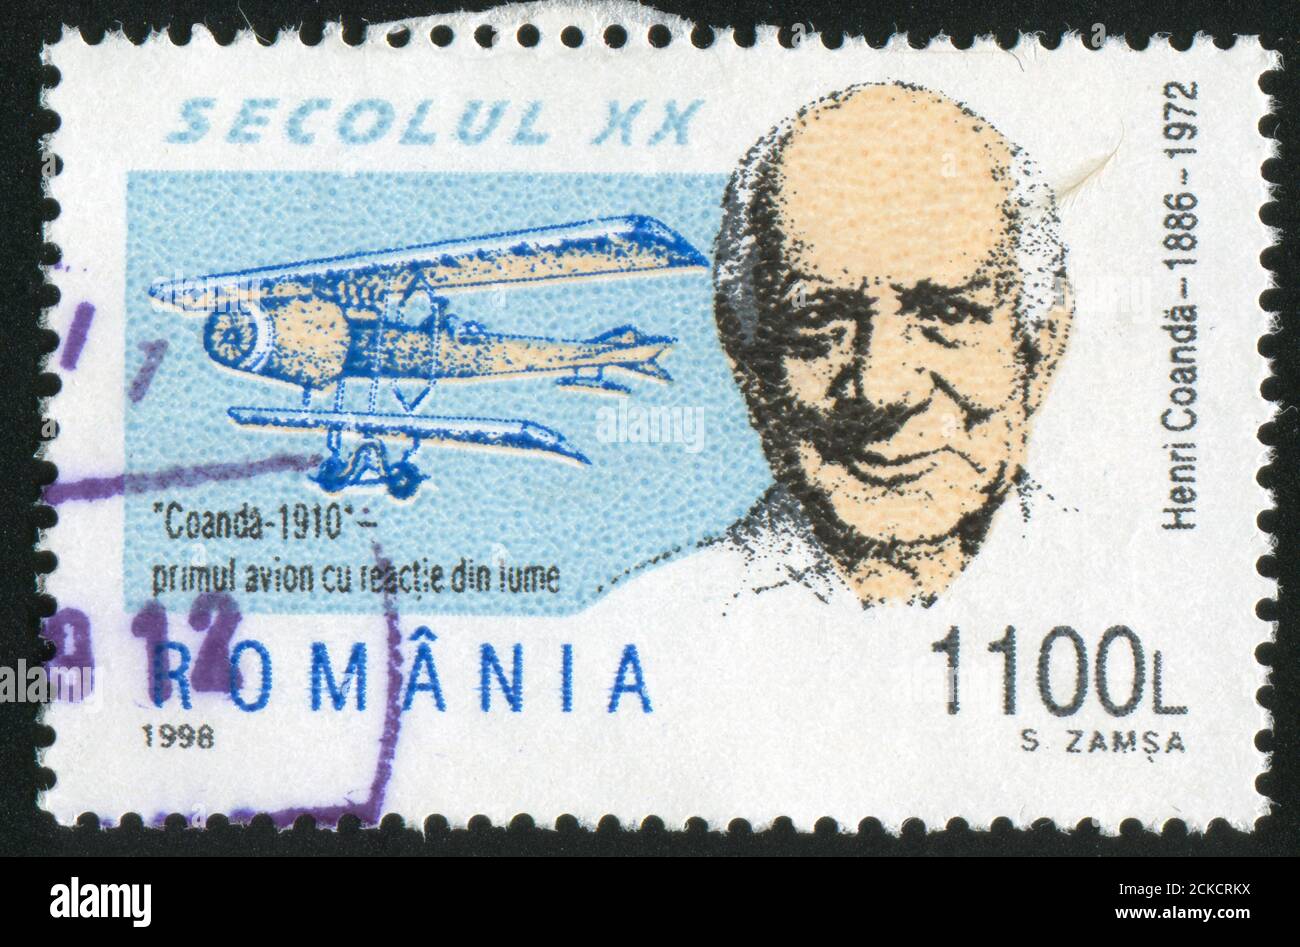 ROMANIA - CIRCA 1998: stamp printed by Romania, show Henri Coanda, circa 1998. Stock Photo